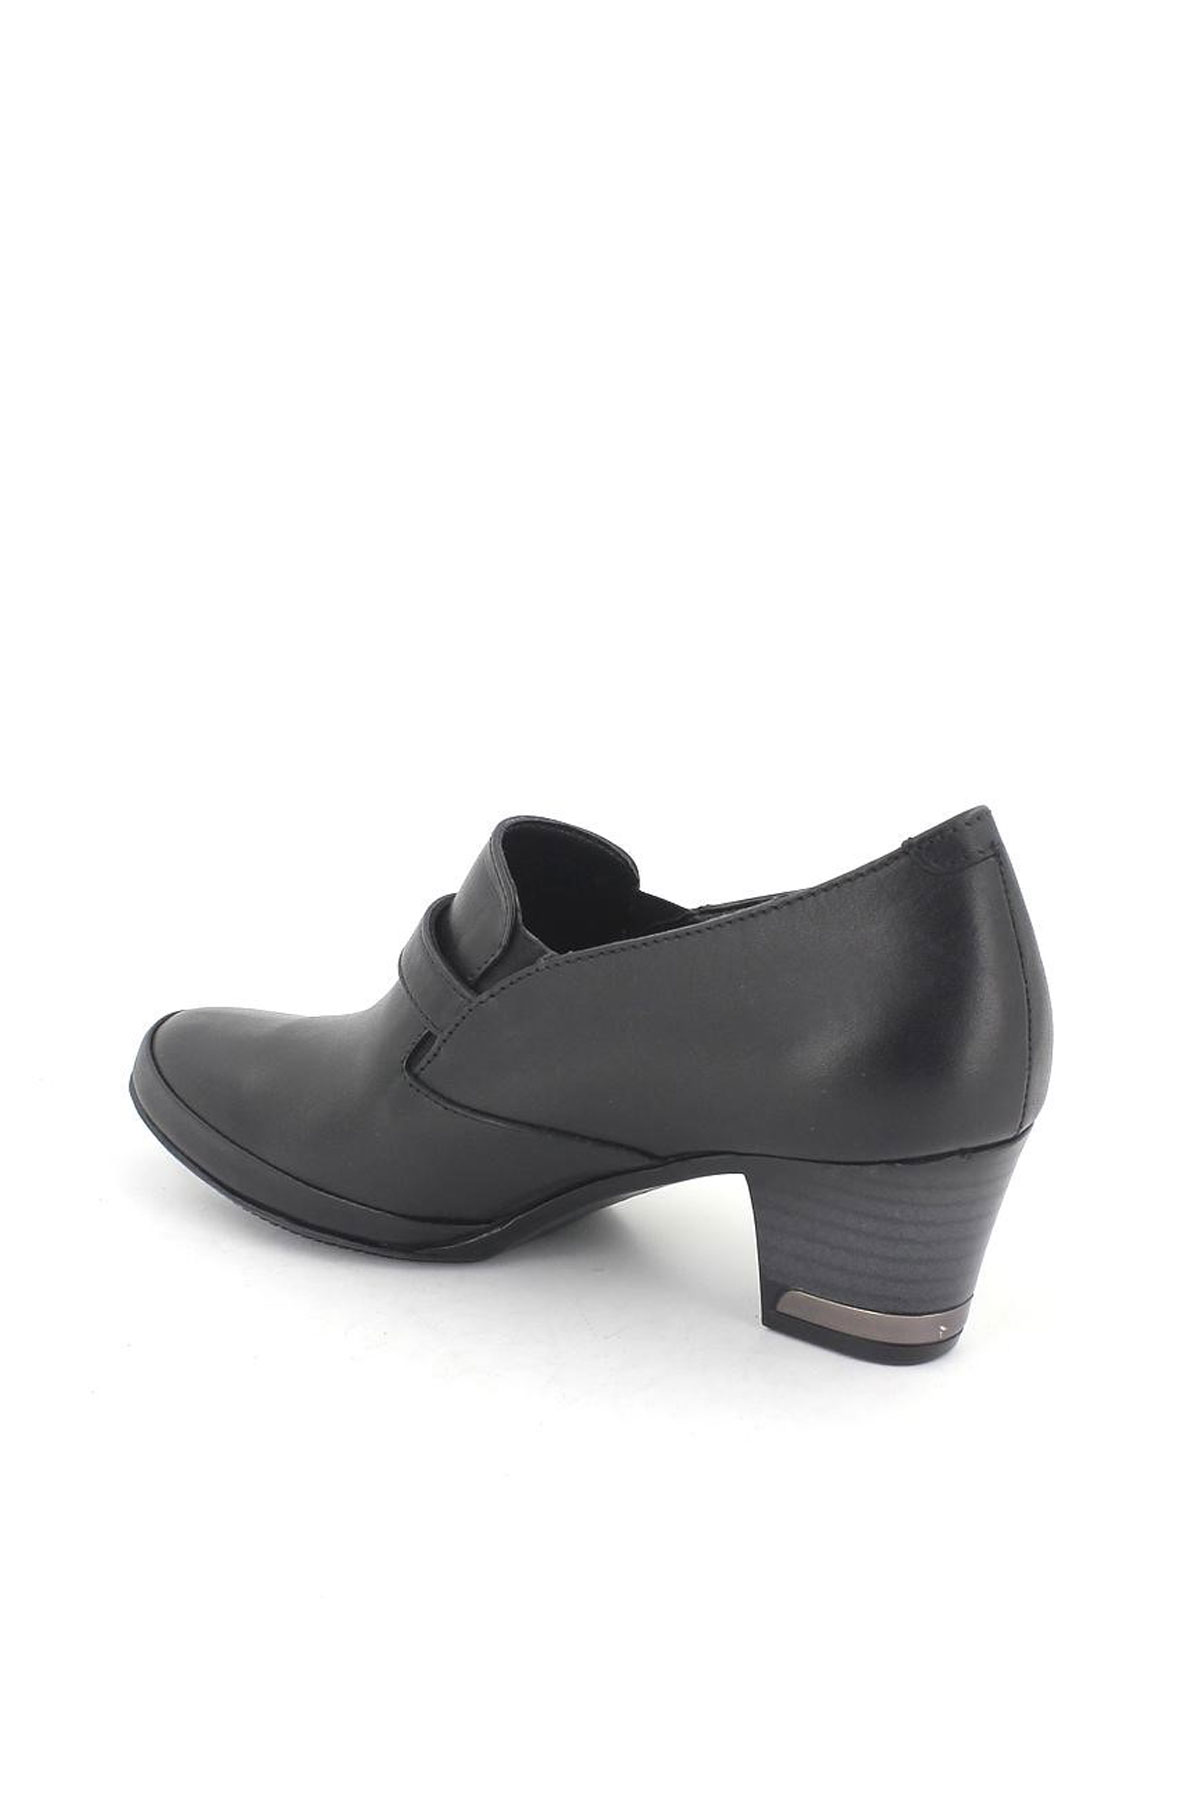 Kadın Topuklu Deri Ayakkabı Siyah 1348K